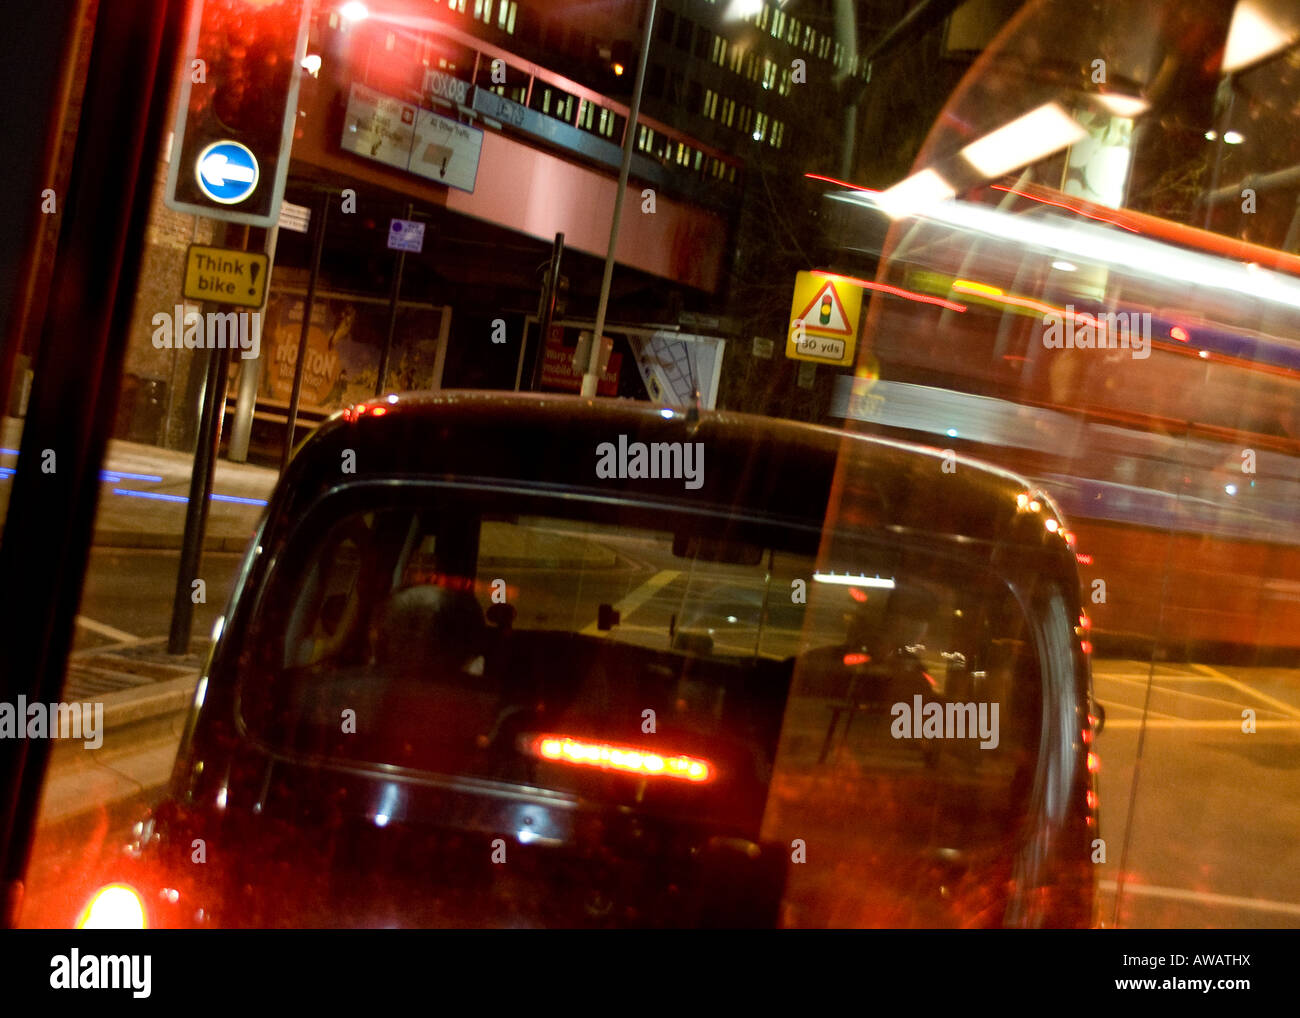 Un taxi de Londres y un autobús londinense desde el interior de un autobús en movimiento, streetscene Foto de stock